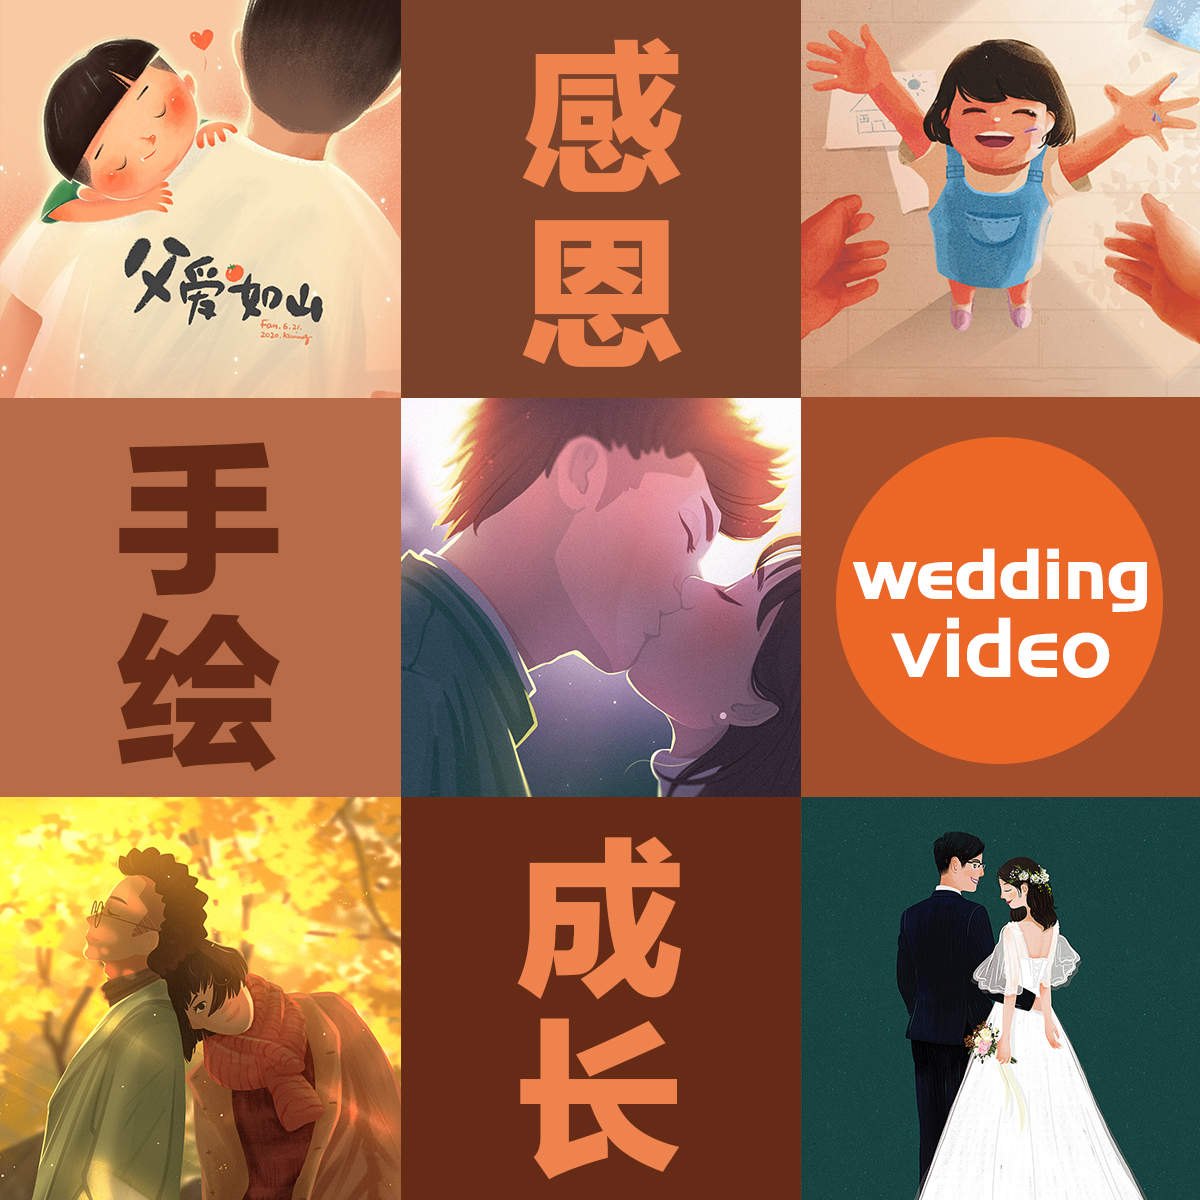 爱情成长故事感恩父母创意片头动画纪念婚礼视频制作开场礼求婚